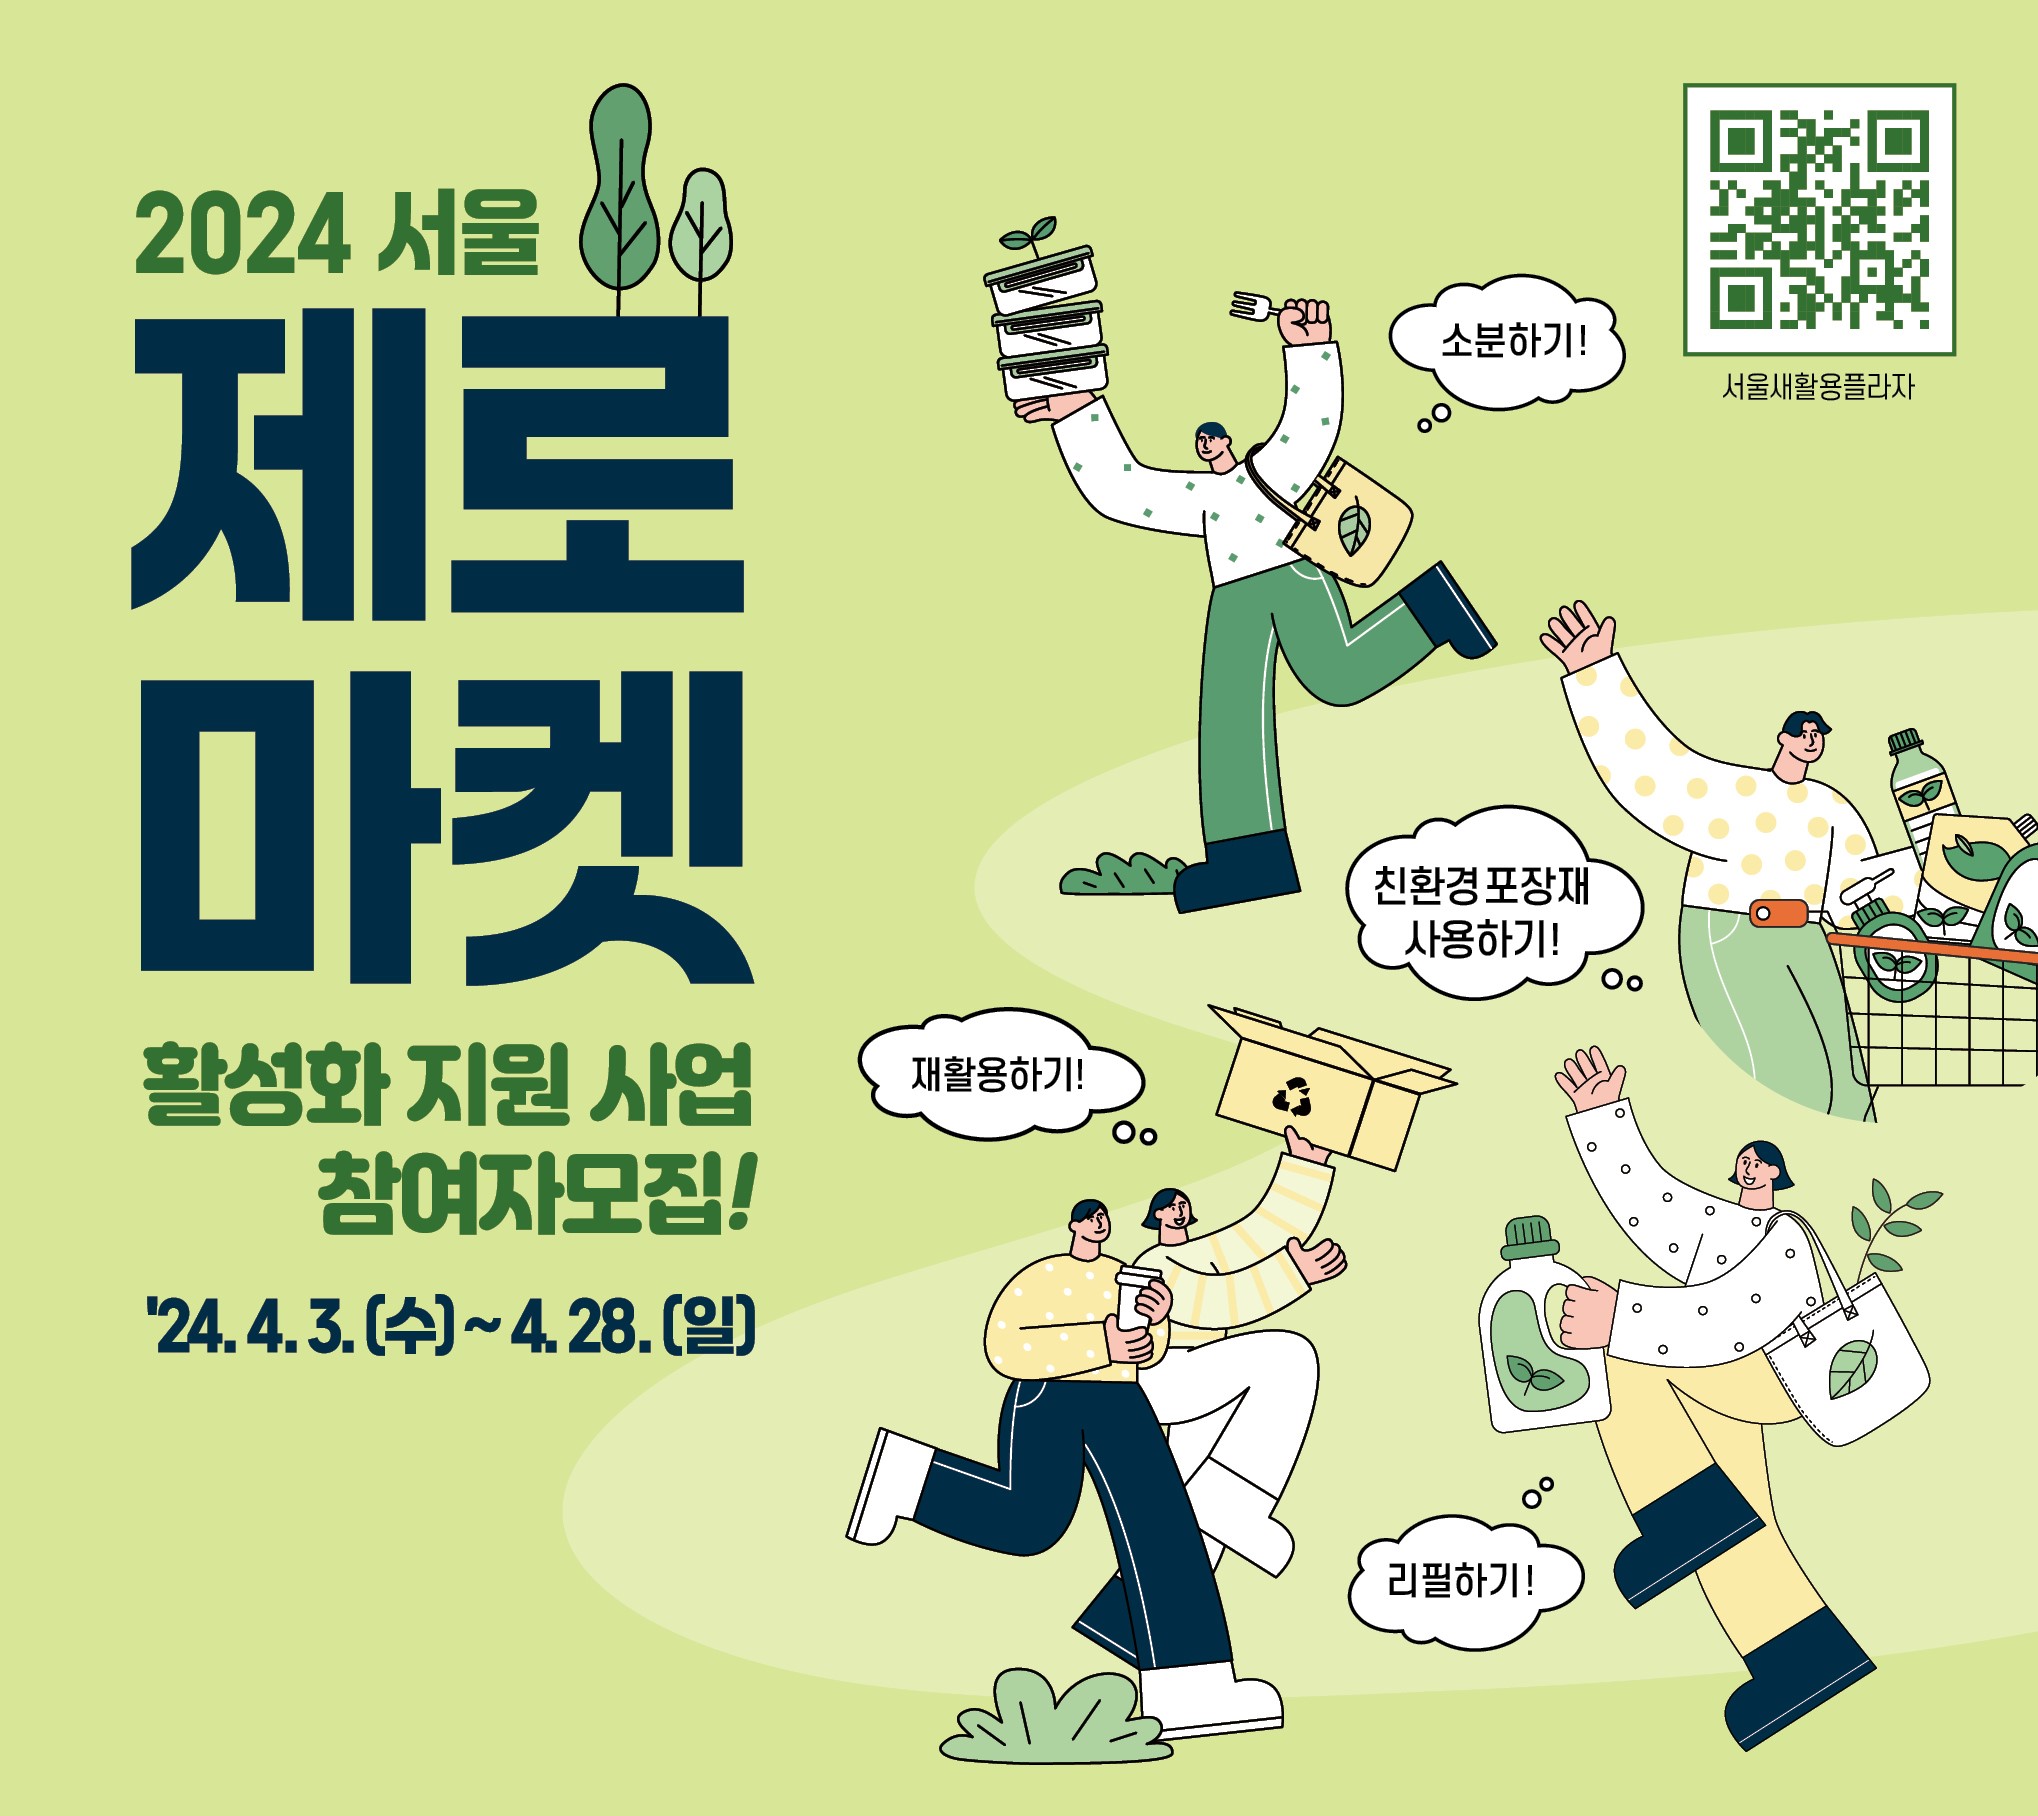 2024년 서울제로마켓 활성화 지원사업 
참여자 모집
24, 4. 3.(수) ~ 4. 28.(일)